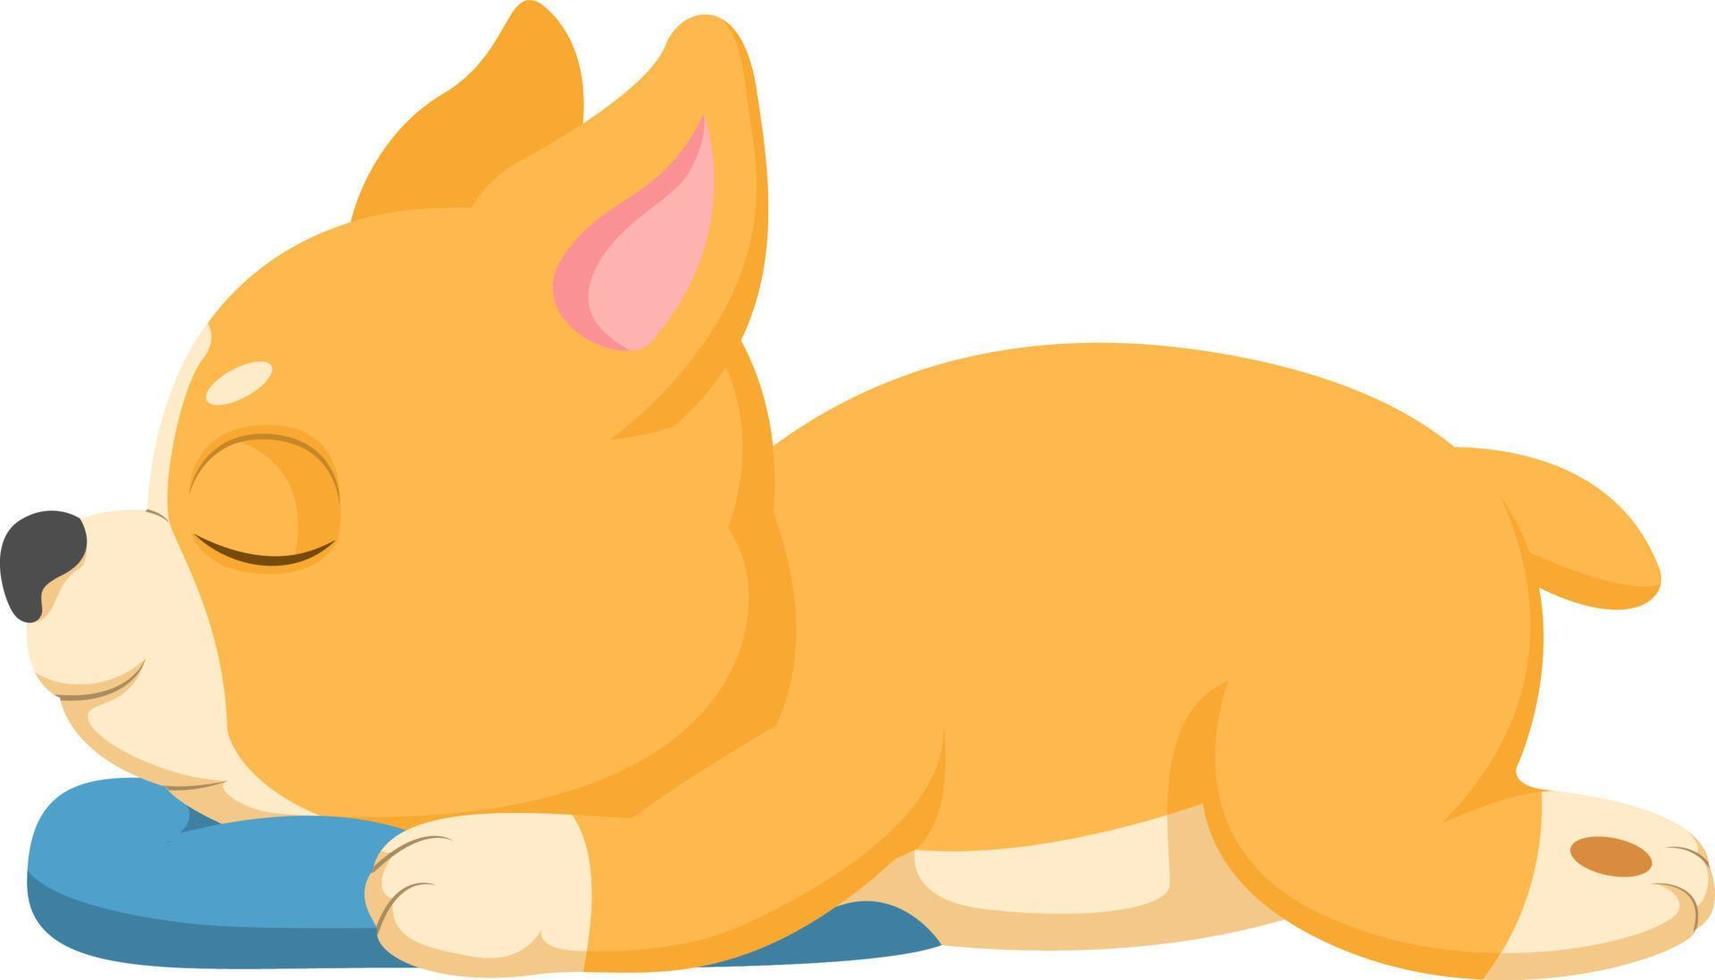 Cute corgi dog sleeping with pillow vector